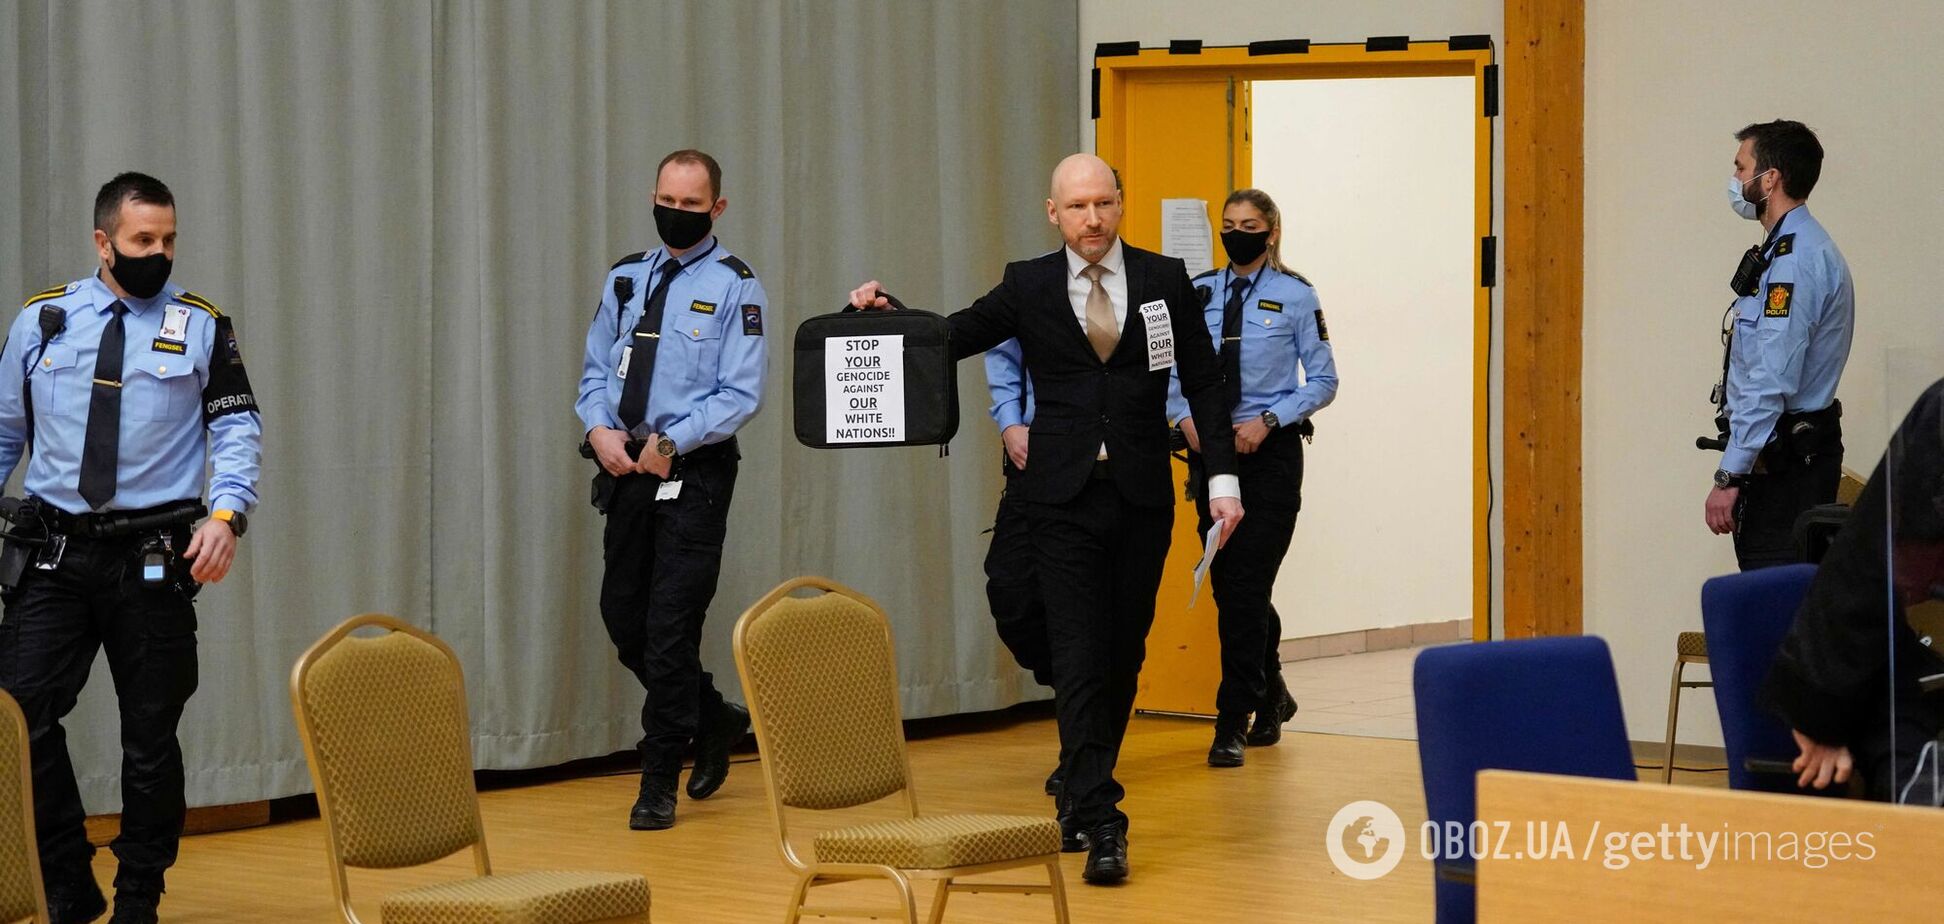 Норвезький суд відмовився достроково випустити терориста Брейвіка, який убив 77 людей